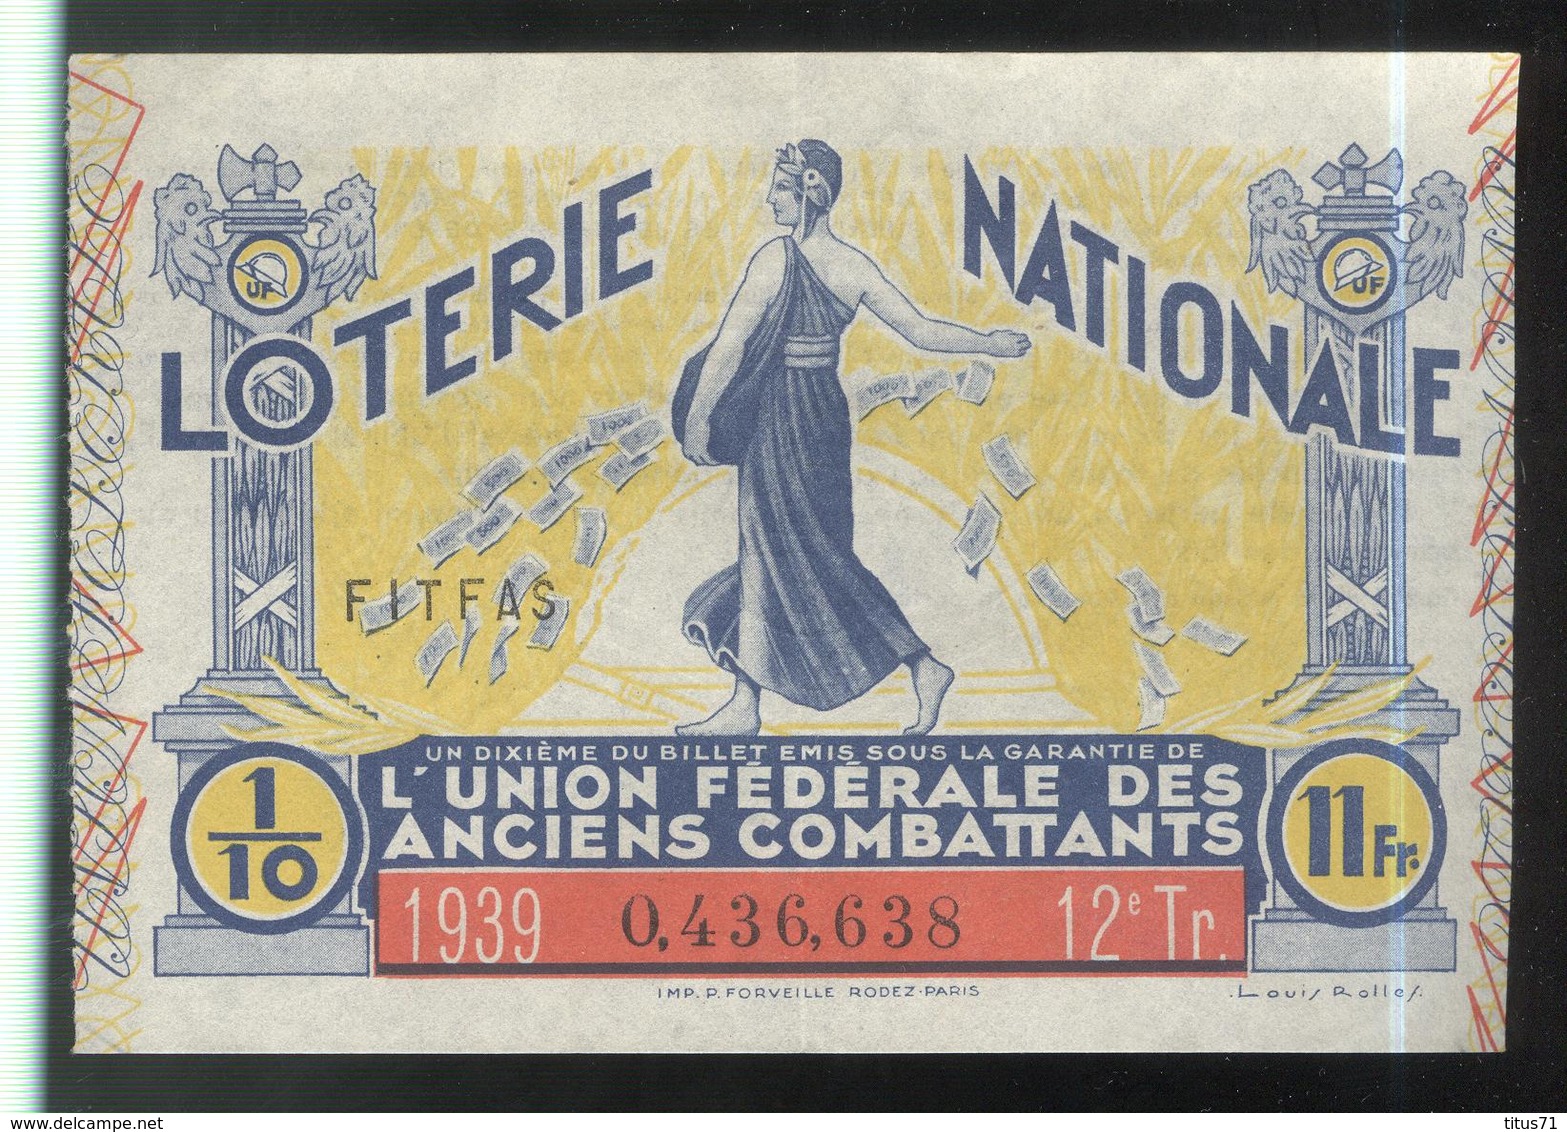 Billet De Loterie - 1/10 Union Fédérale Des Anciens Combattants 12ème Tranche 1939 - Billets De Loterie